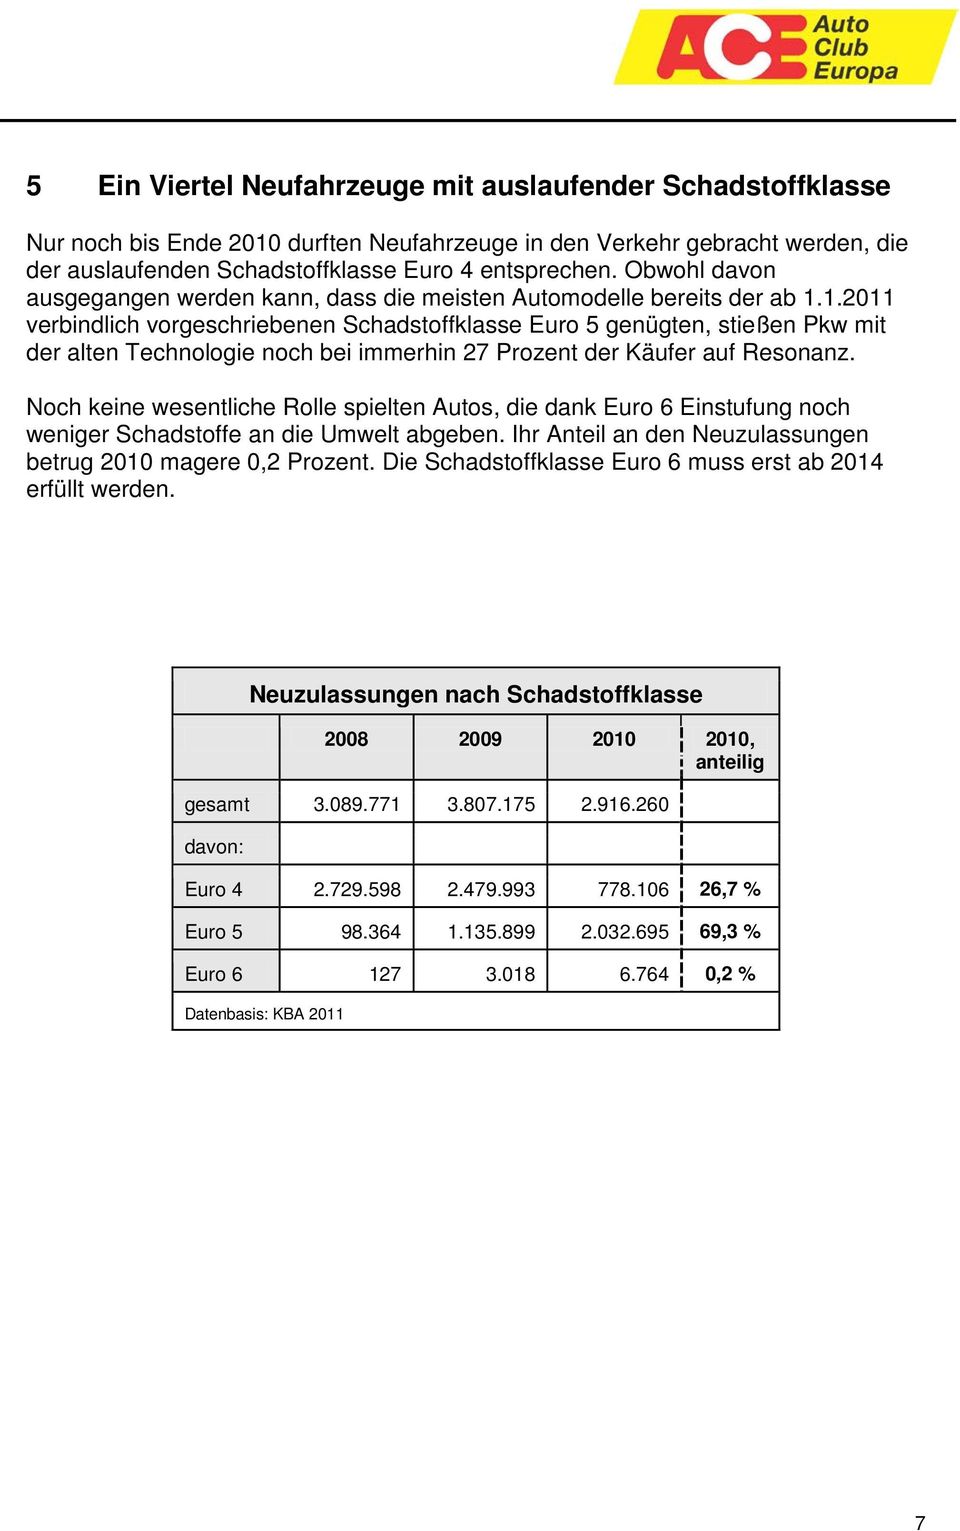 1.2011 verbindlich vorgeschriebenen Schadstoffklasse Euro 5 genügten, stießen Pkw mit der alten Technologie noch bei immerhin 27 Prozent der Käufer auf Resonanz.